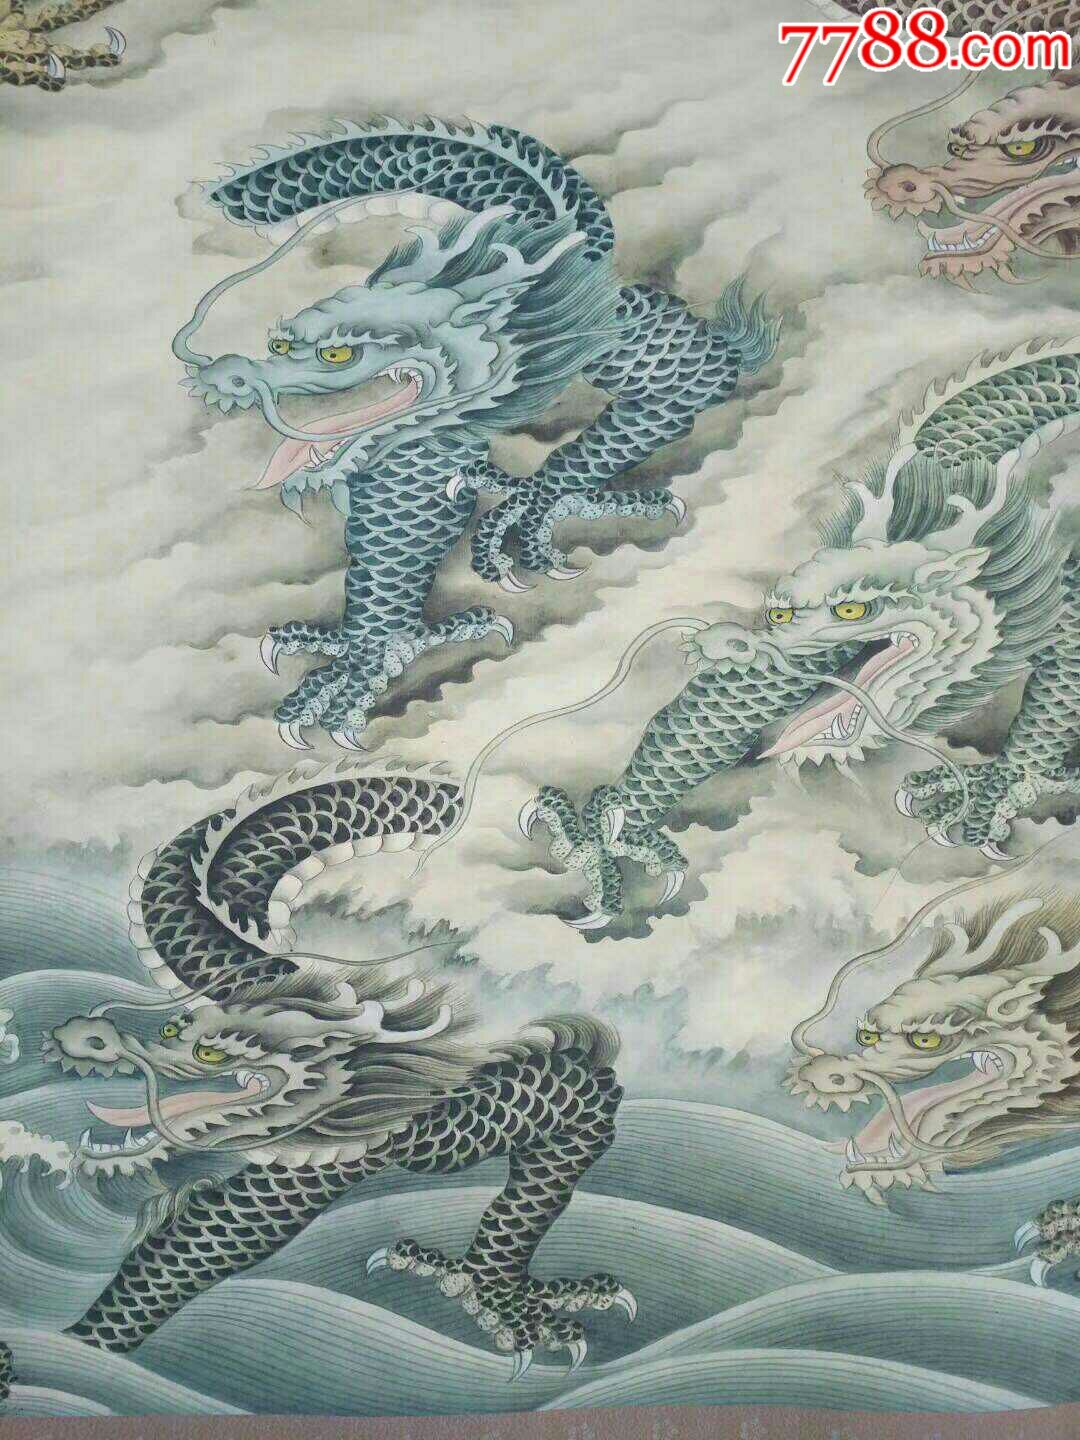 清代著名画家虚谷的纯手绘《九龙戏珠》长卷画一副